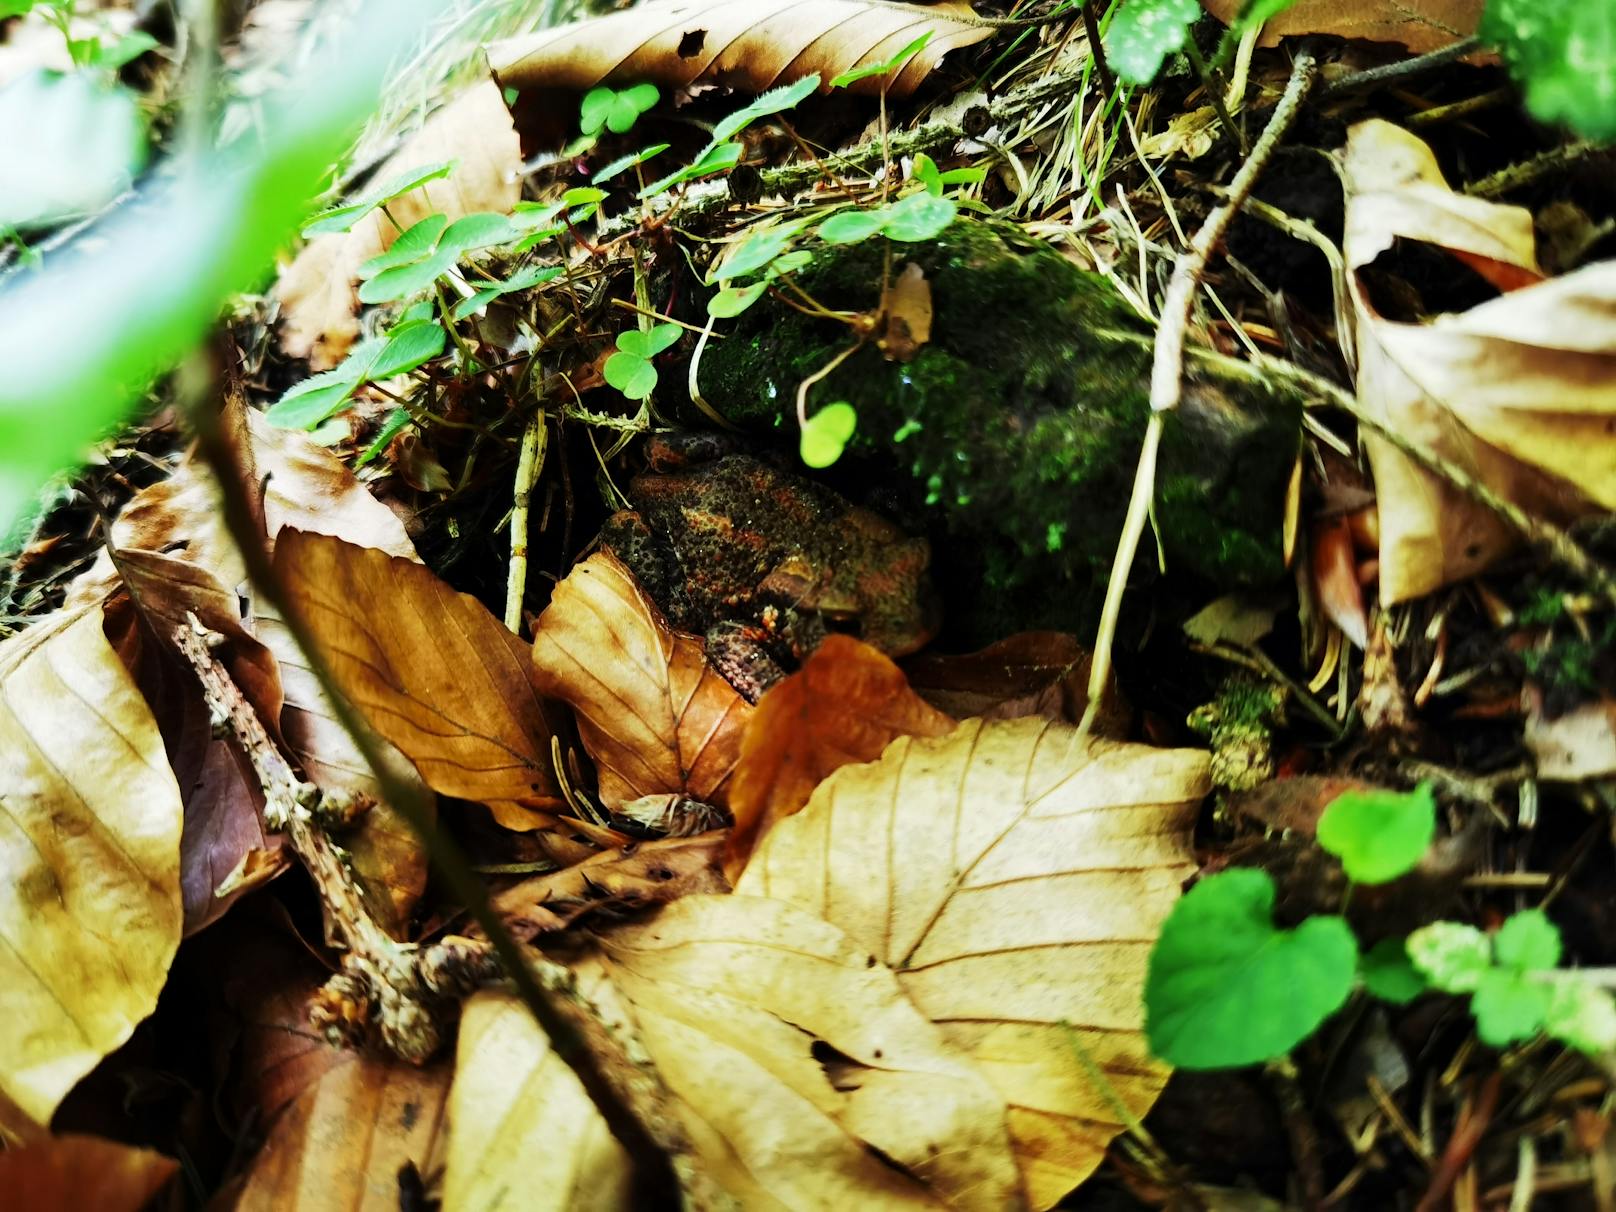 Meister der Tarnung: Auf der linken Bildseite versteckt&nbsp; sich hinter den Blättern eine kleine Kröte.